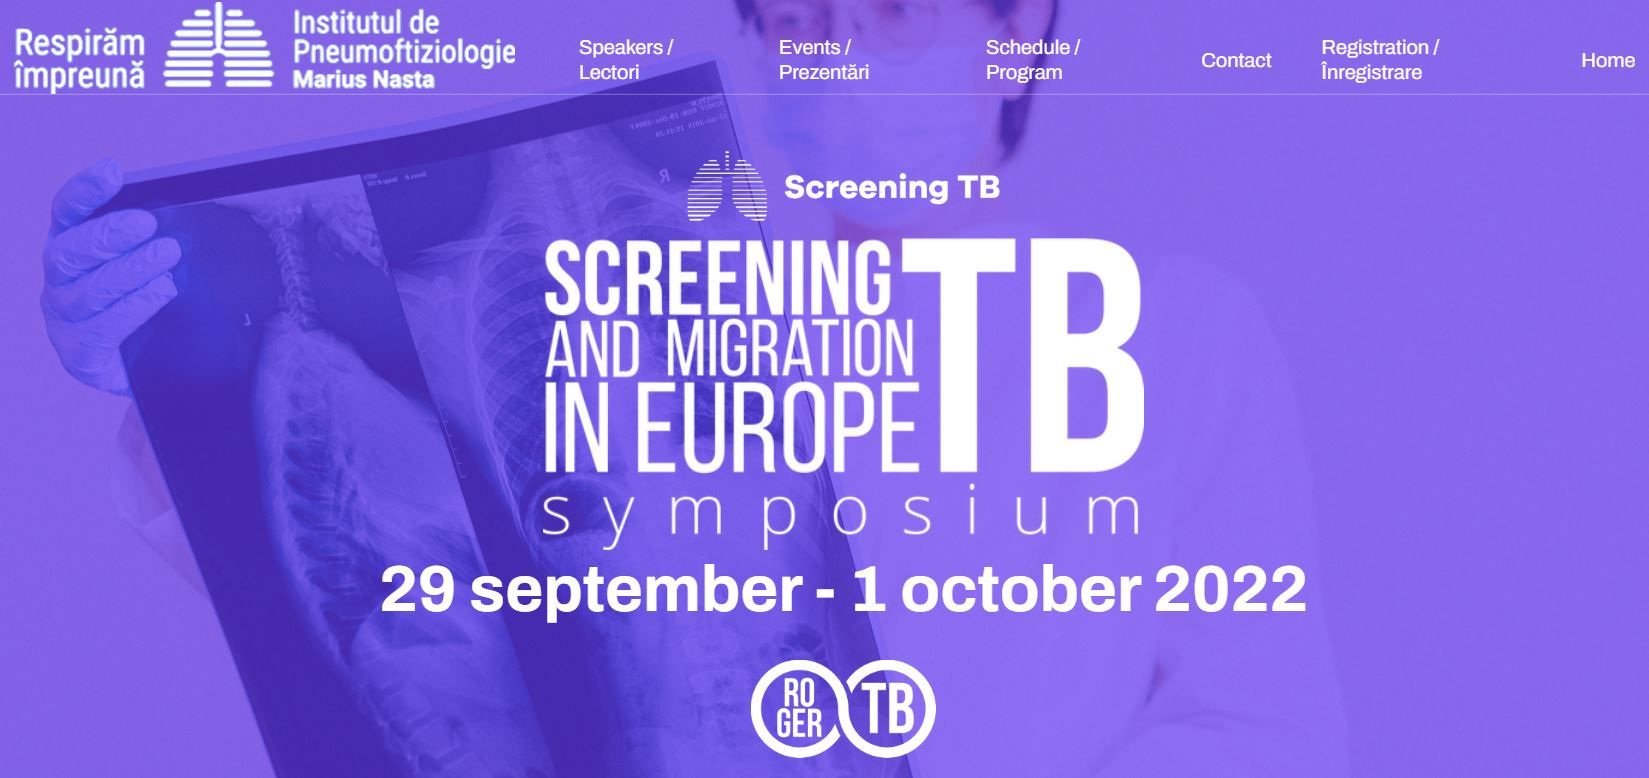 Cel mai mare simpozion din Europa despre tuberculoză are loc la București